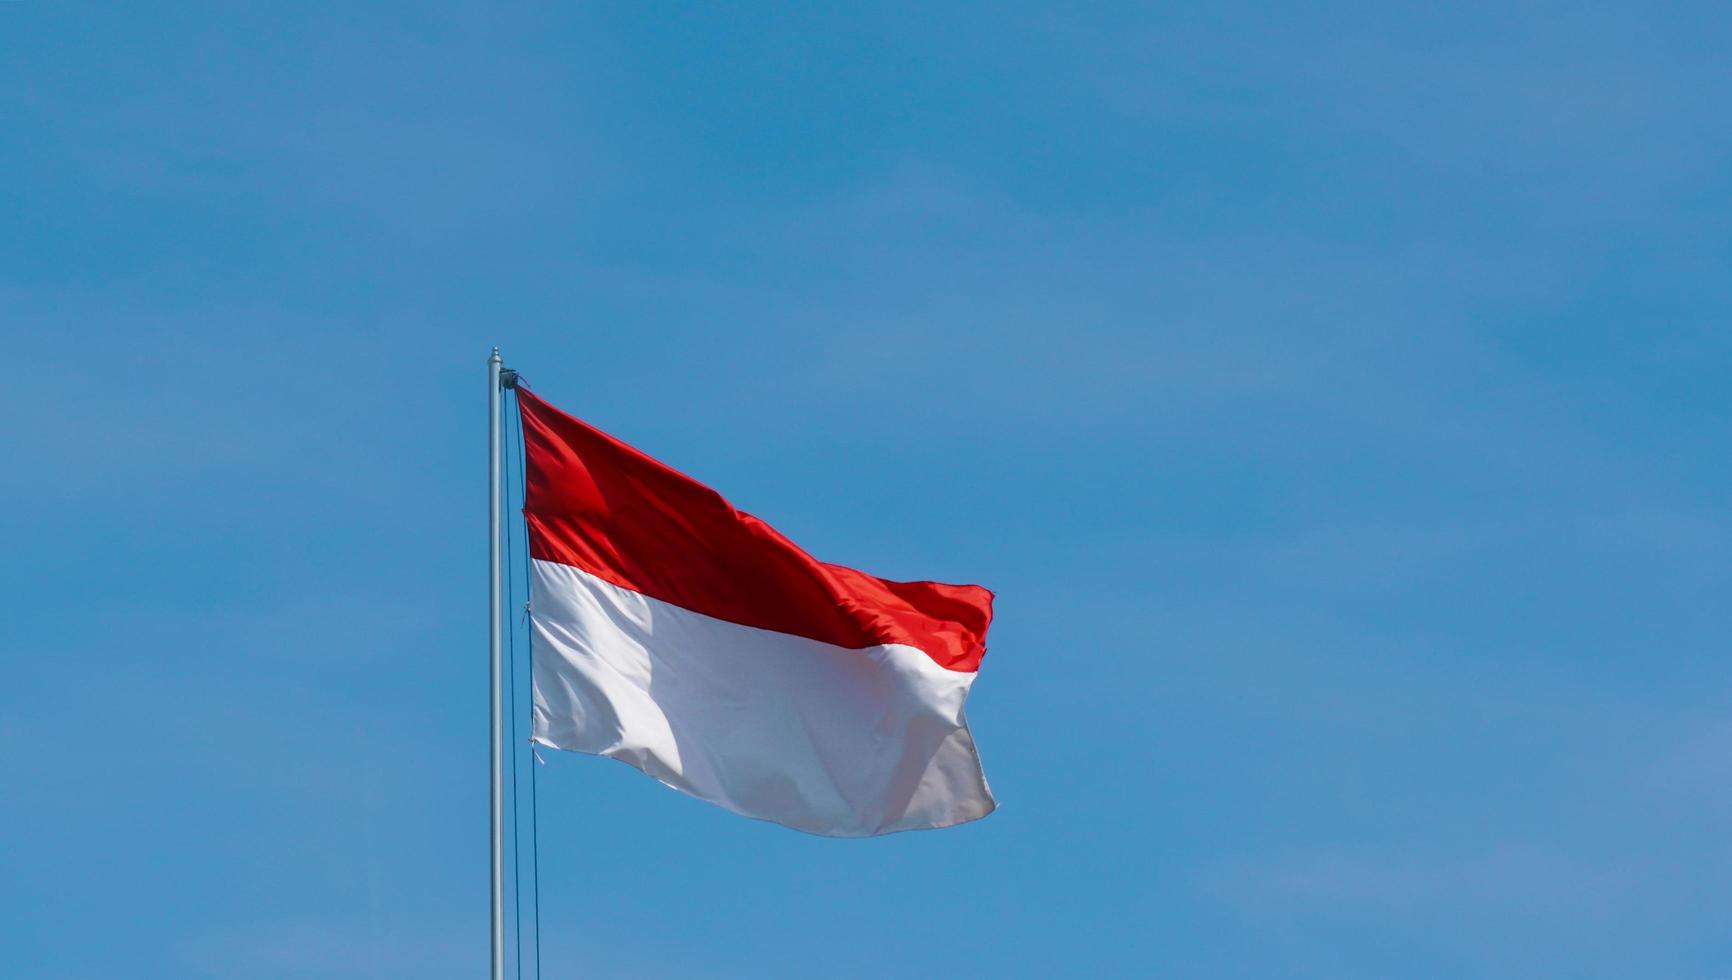 die indonesische flagge weht hoch. die wehende Flagge mit einem klaren blauen Himmelshintergrund. die rot-weiße Flagge weht stolz an einem sonnigen Tag. foto